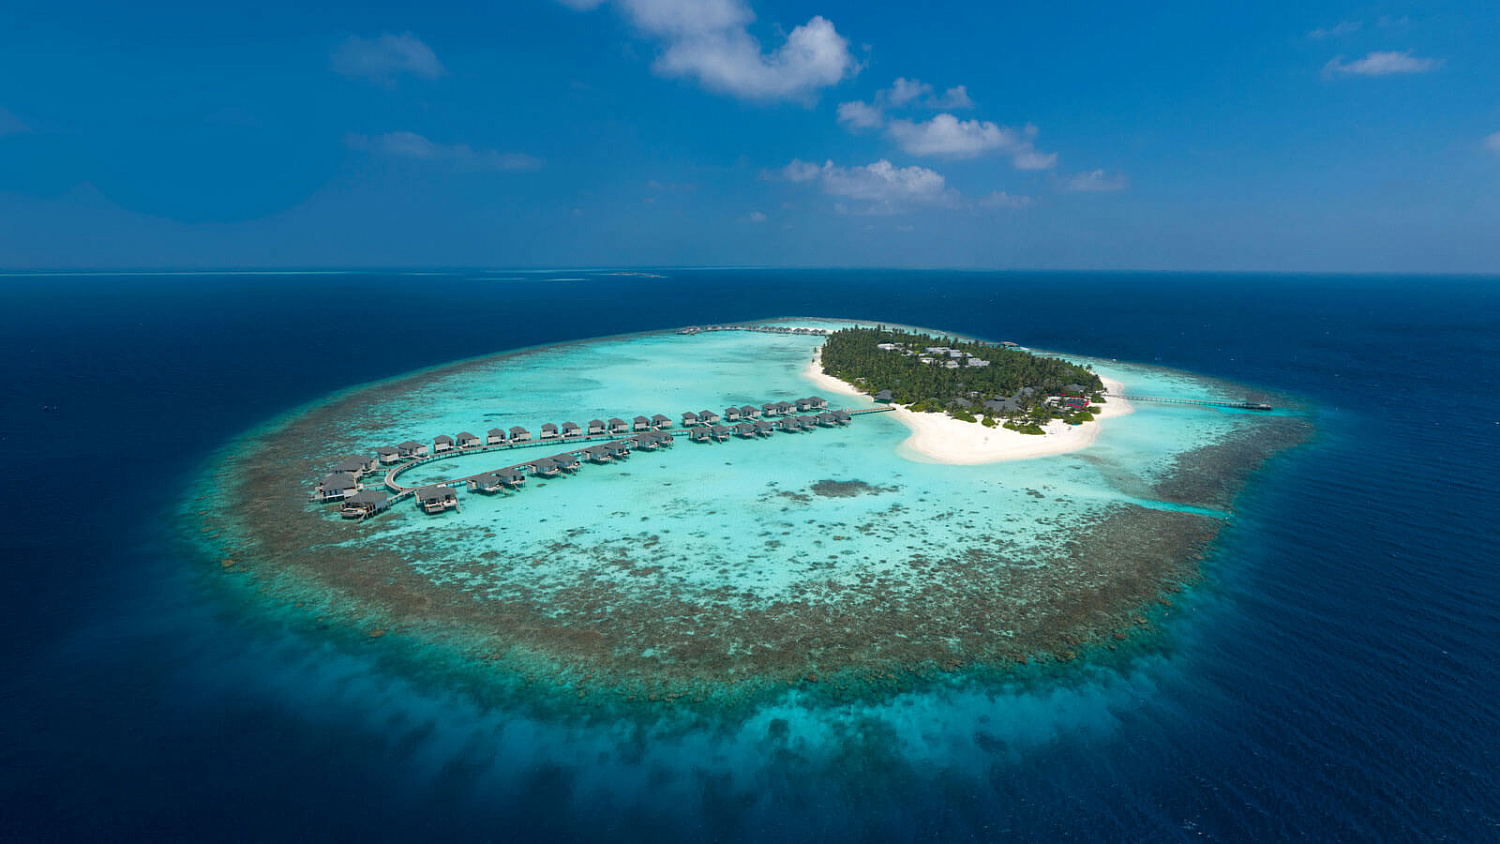 NH Collection Maldives Havodda Resort 